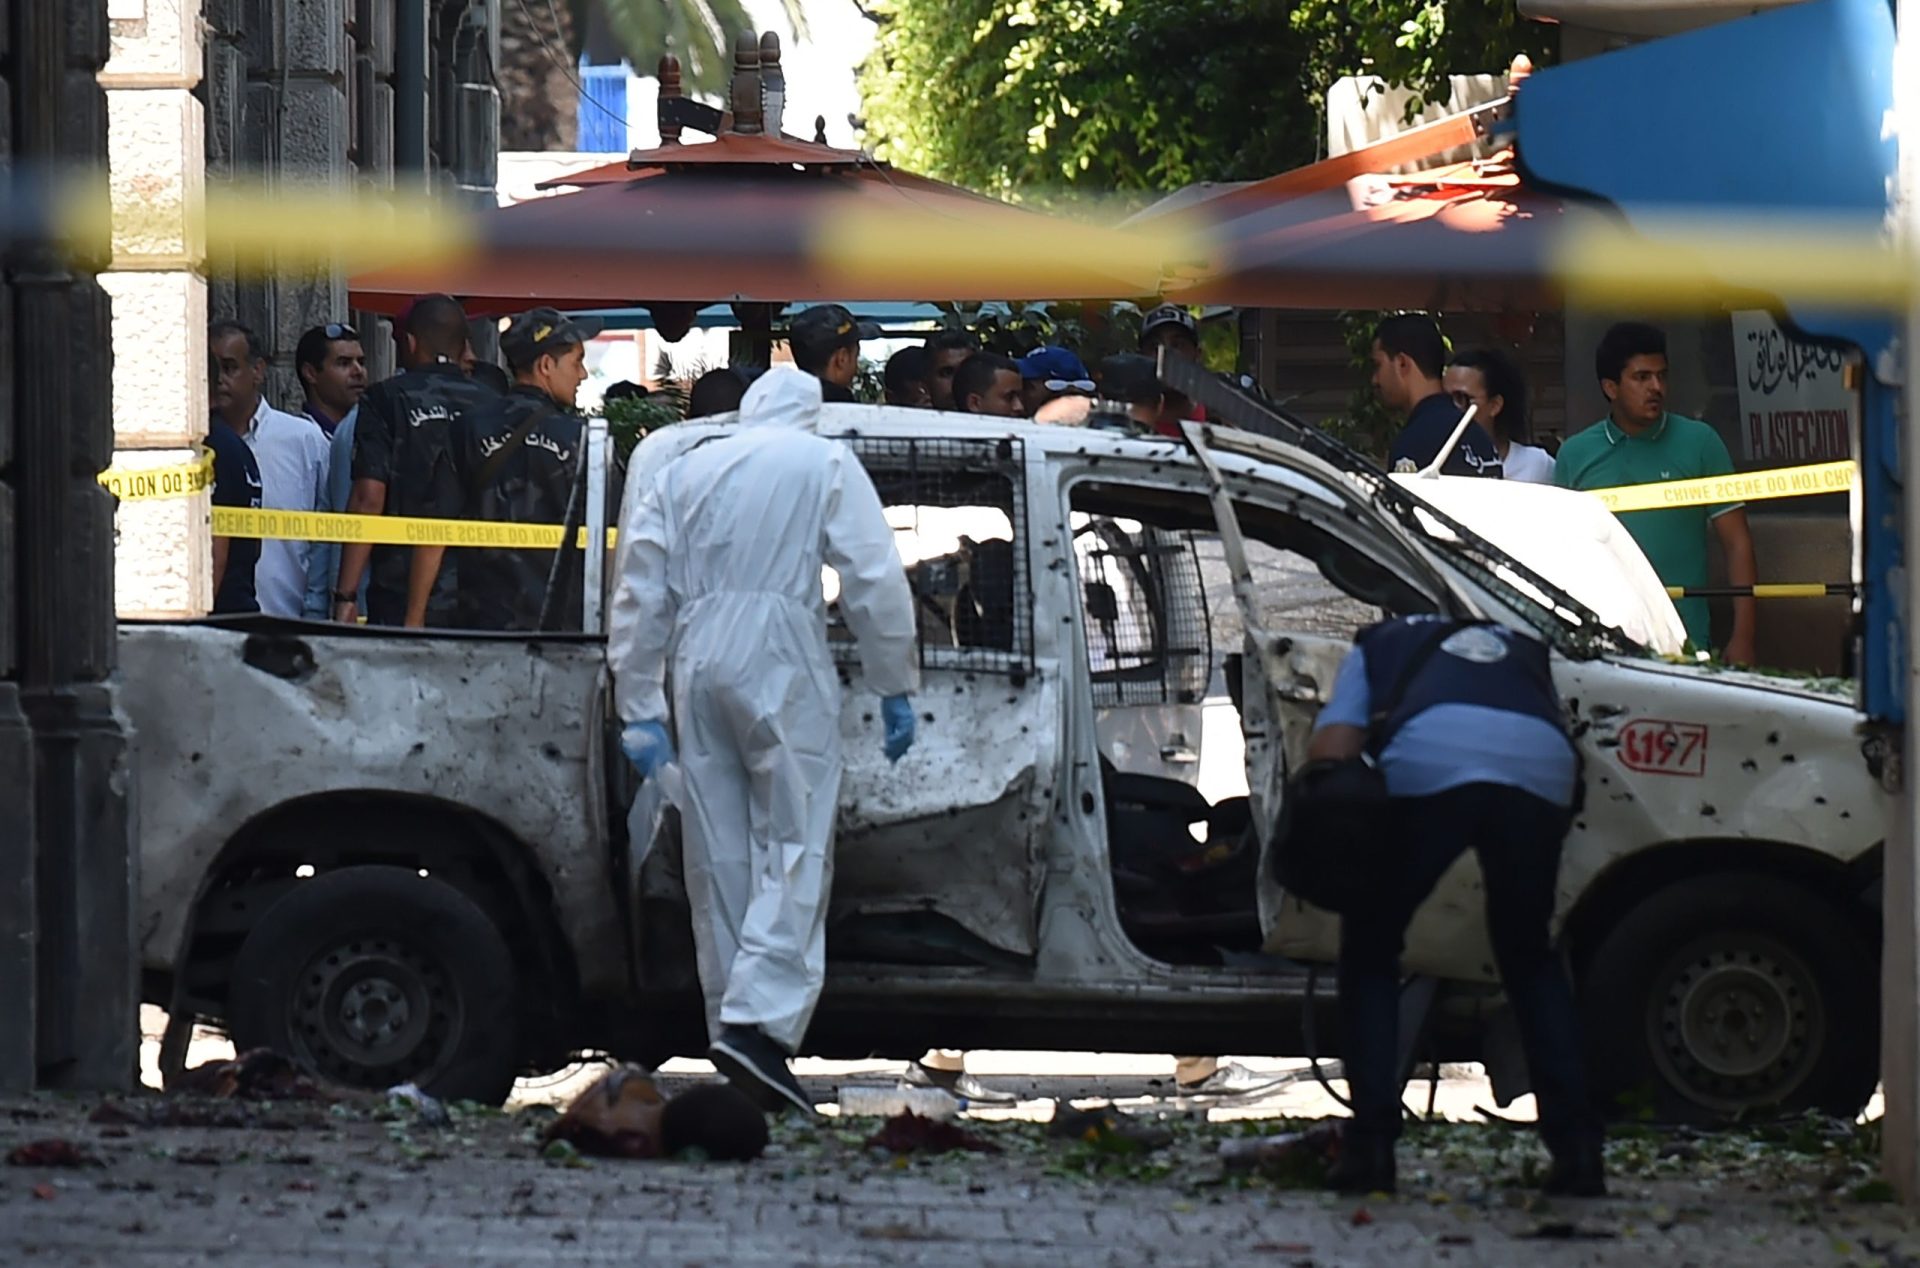 Tunísia. Um dia caótico com dois atentados suicidas